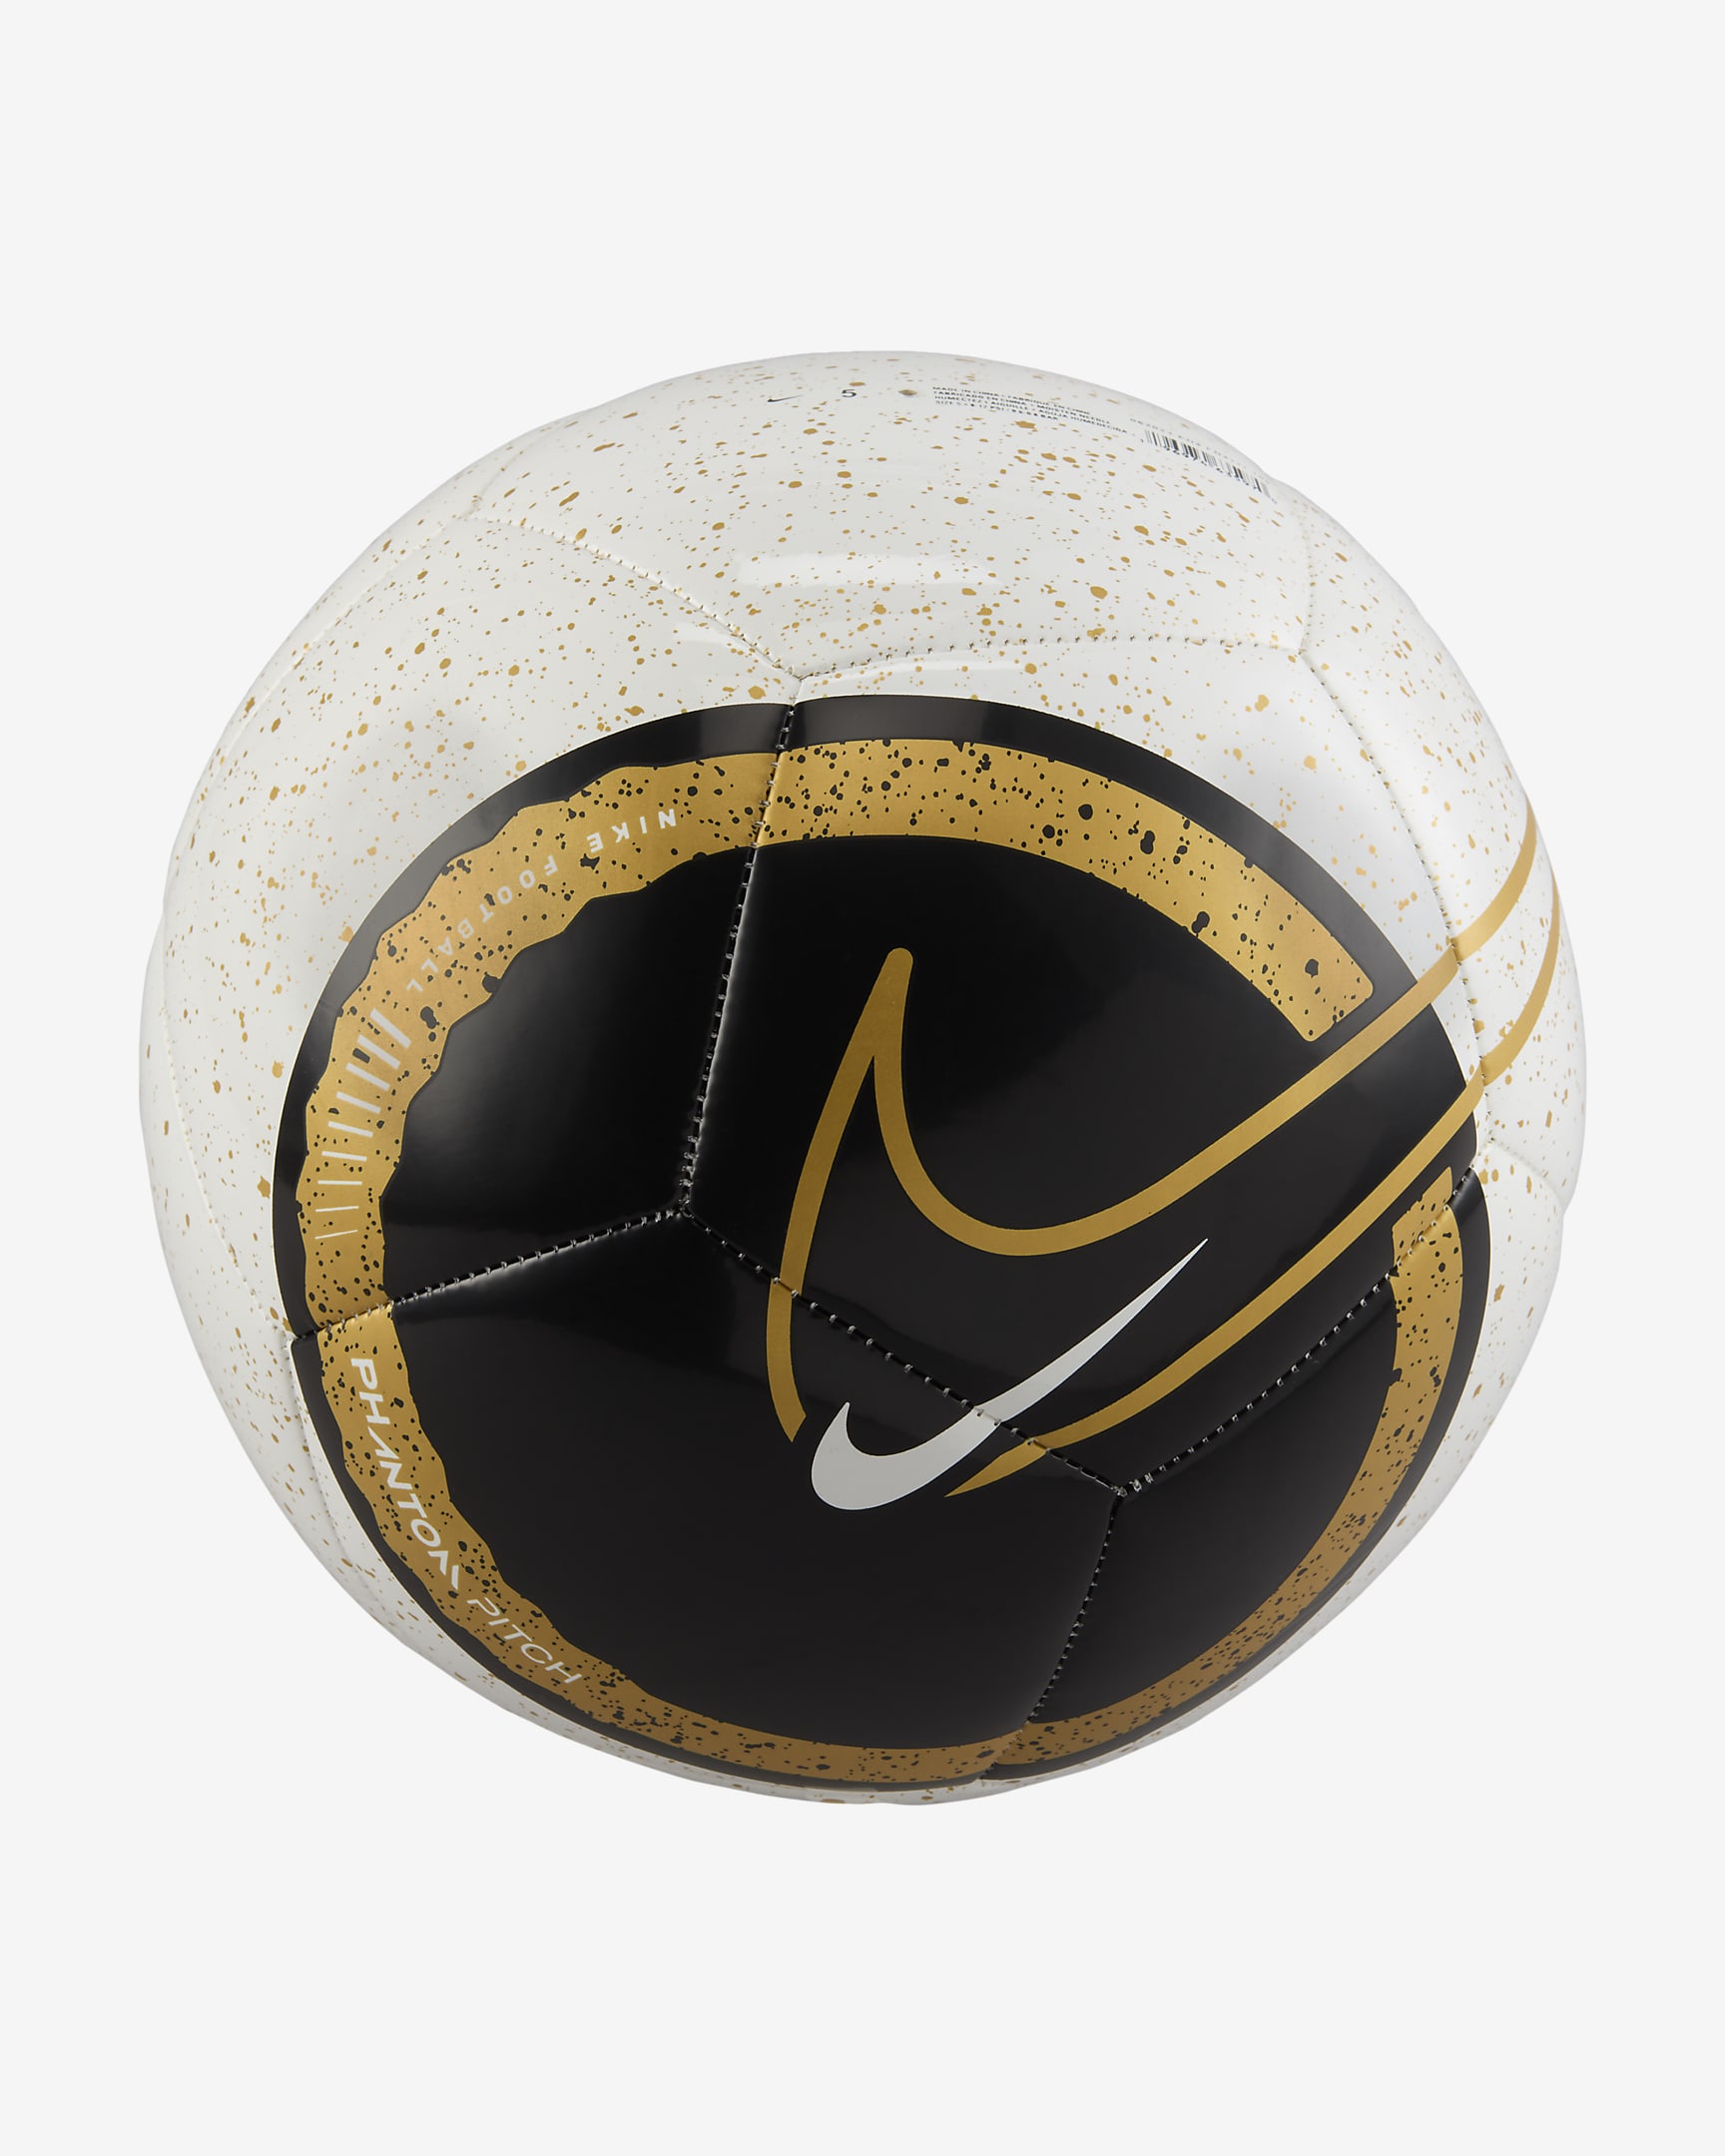 Nike Phantom Football - White/Black/Gold/Gold